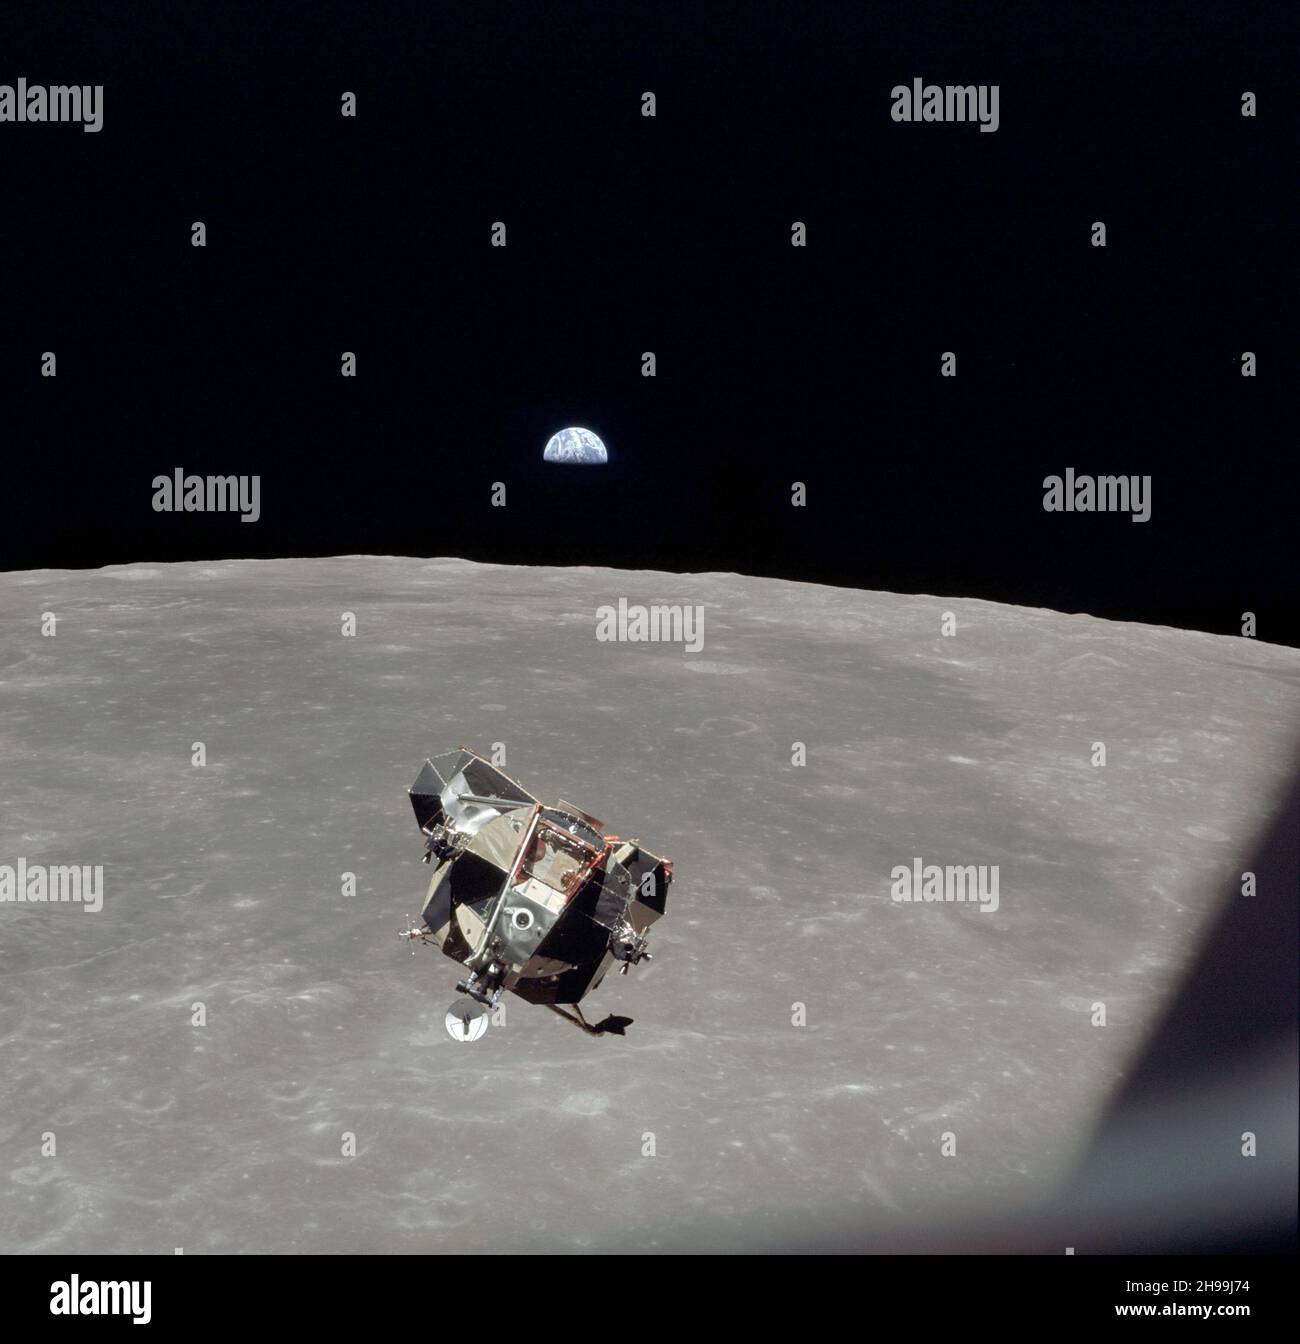 Die Aufstiegsstufe der Apollo 11 Lunar Module mit den Astronauten Neil A. Armstrong und Edwin E. Aldrin Jr. an Bord wird während des Rendezvous in der Mondumlaufbahn von den Command and Service Modules (CSM) aus fotografiert. Die Mondlandefähre (LM) machte ihren Andockansatz zum CSM. Astronaut Michael Collins blieb mit dem CSM in der Mondbahn, während die anderen beiden Besatzungsmänner die Mondoberfläche erkundeten. Der große, dunkle Bereich im Hintergrund ist Smyth's Sea, zentriert auf 85 Grad östlicher Länge und 2 Grad südlicher Breite auf der Mondoberfläche (nahe). Stockfoto